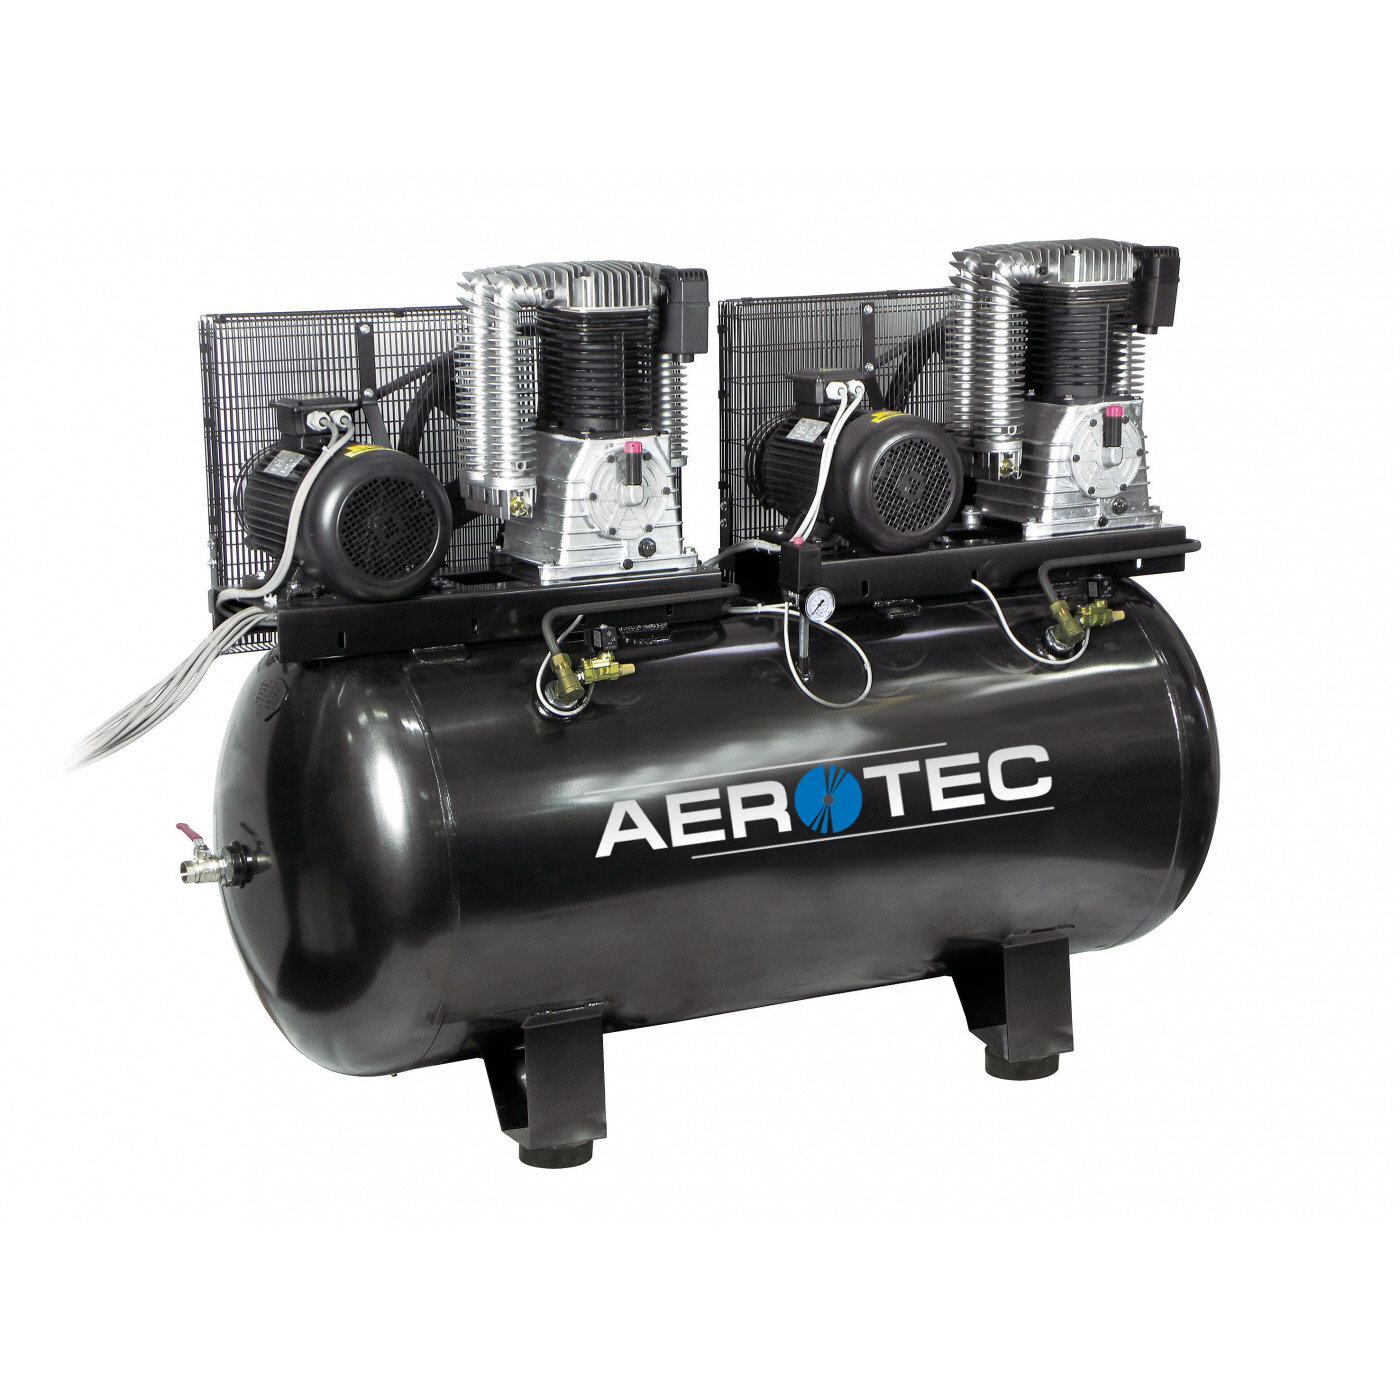 AEROTEC Kolbenkompressor AK50-500 PRO Tandem 2 x 7,4 KW Stationär